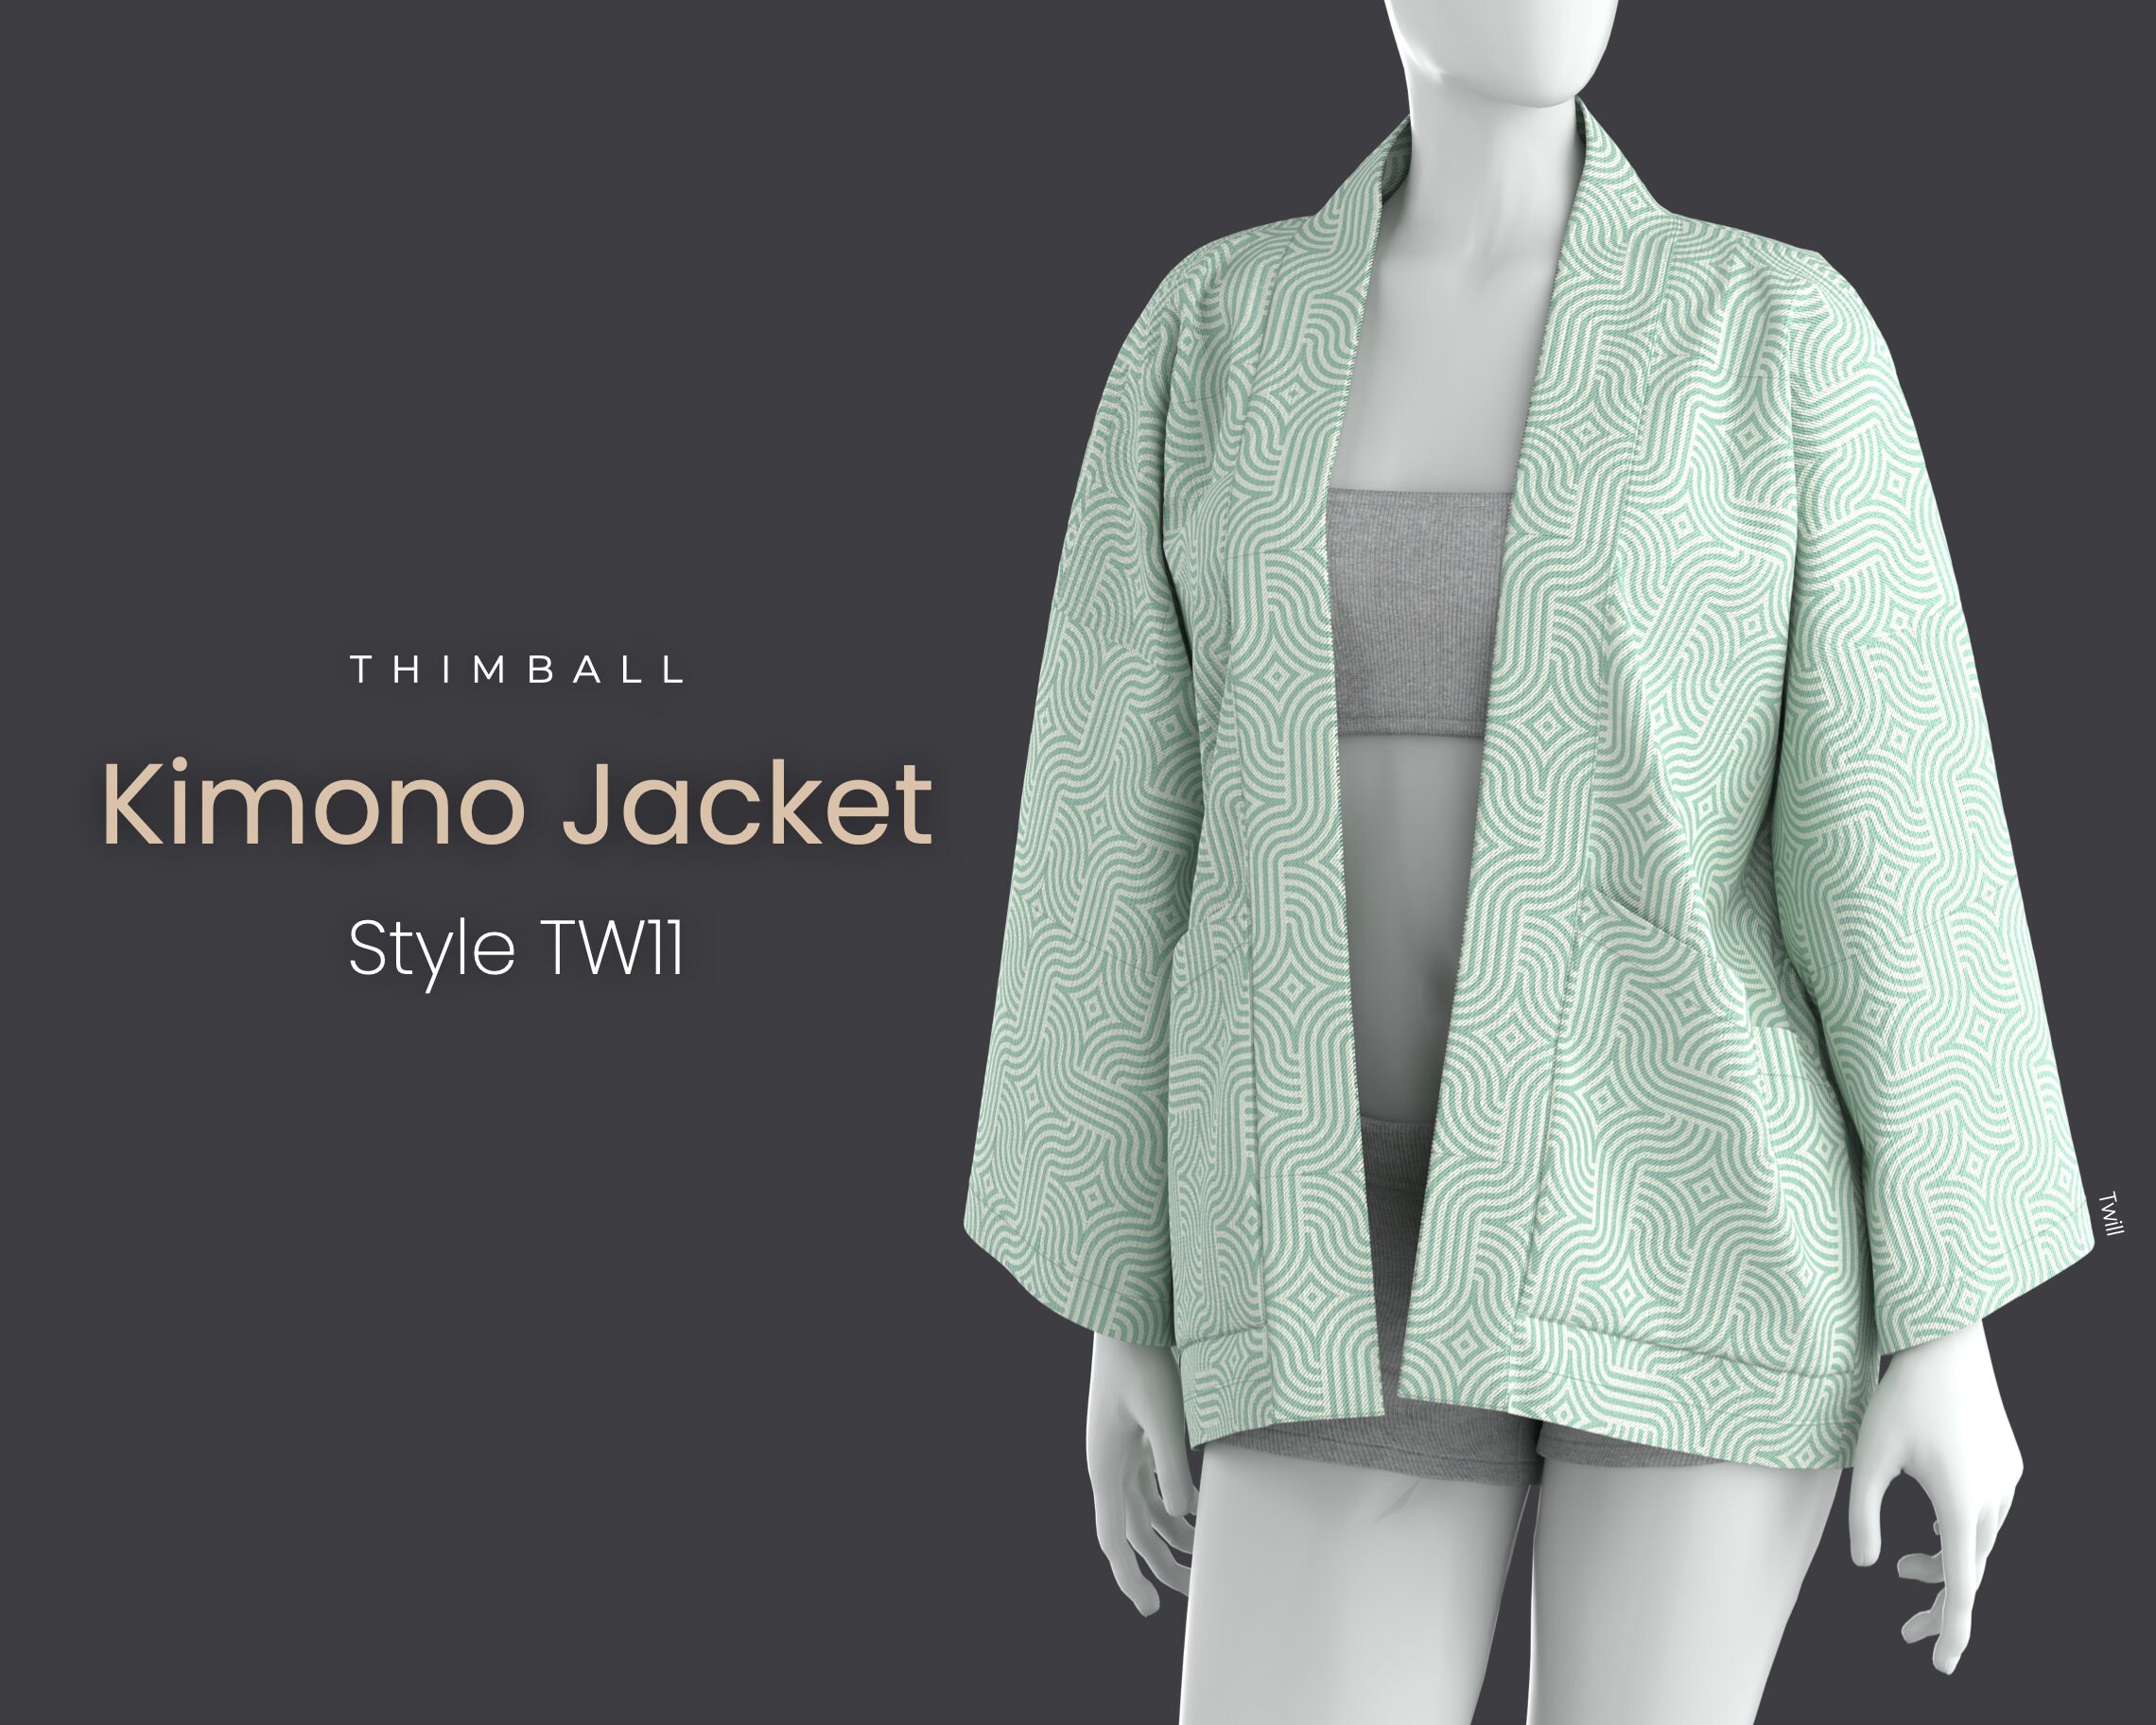 Kimono Jacket - Free Sewing Pattern - Love to Stitch and Sew